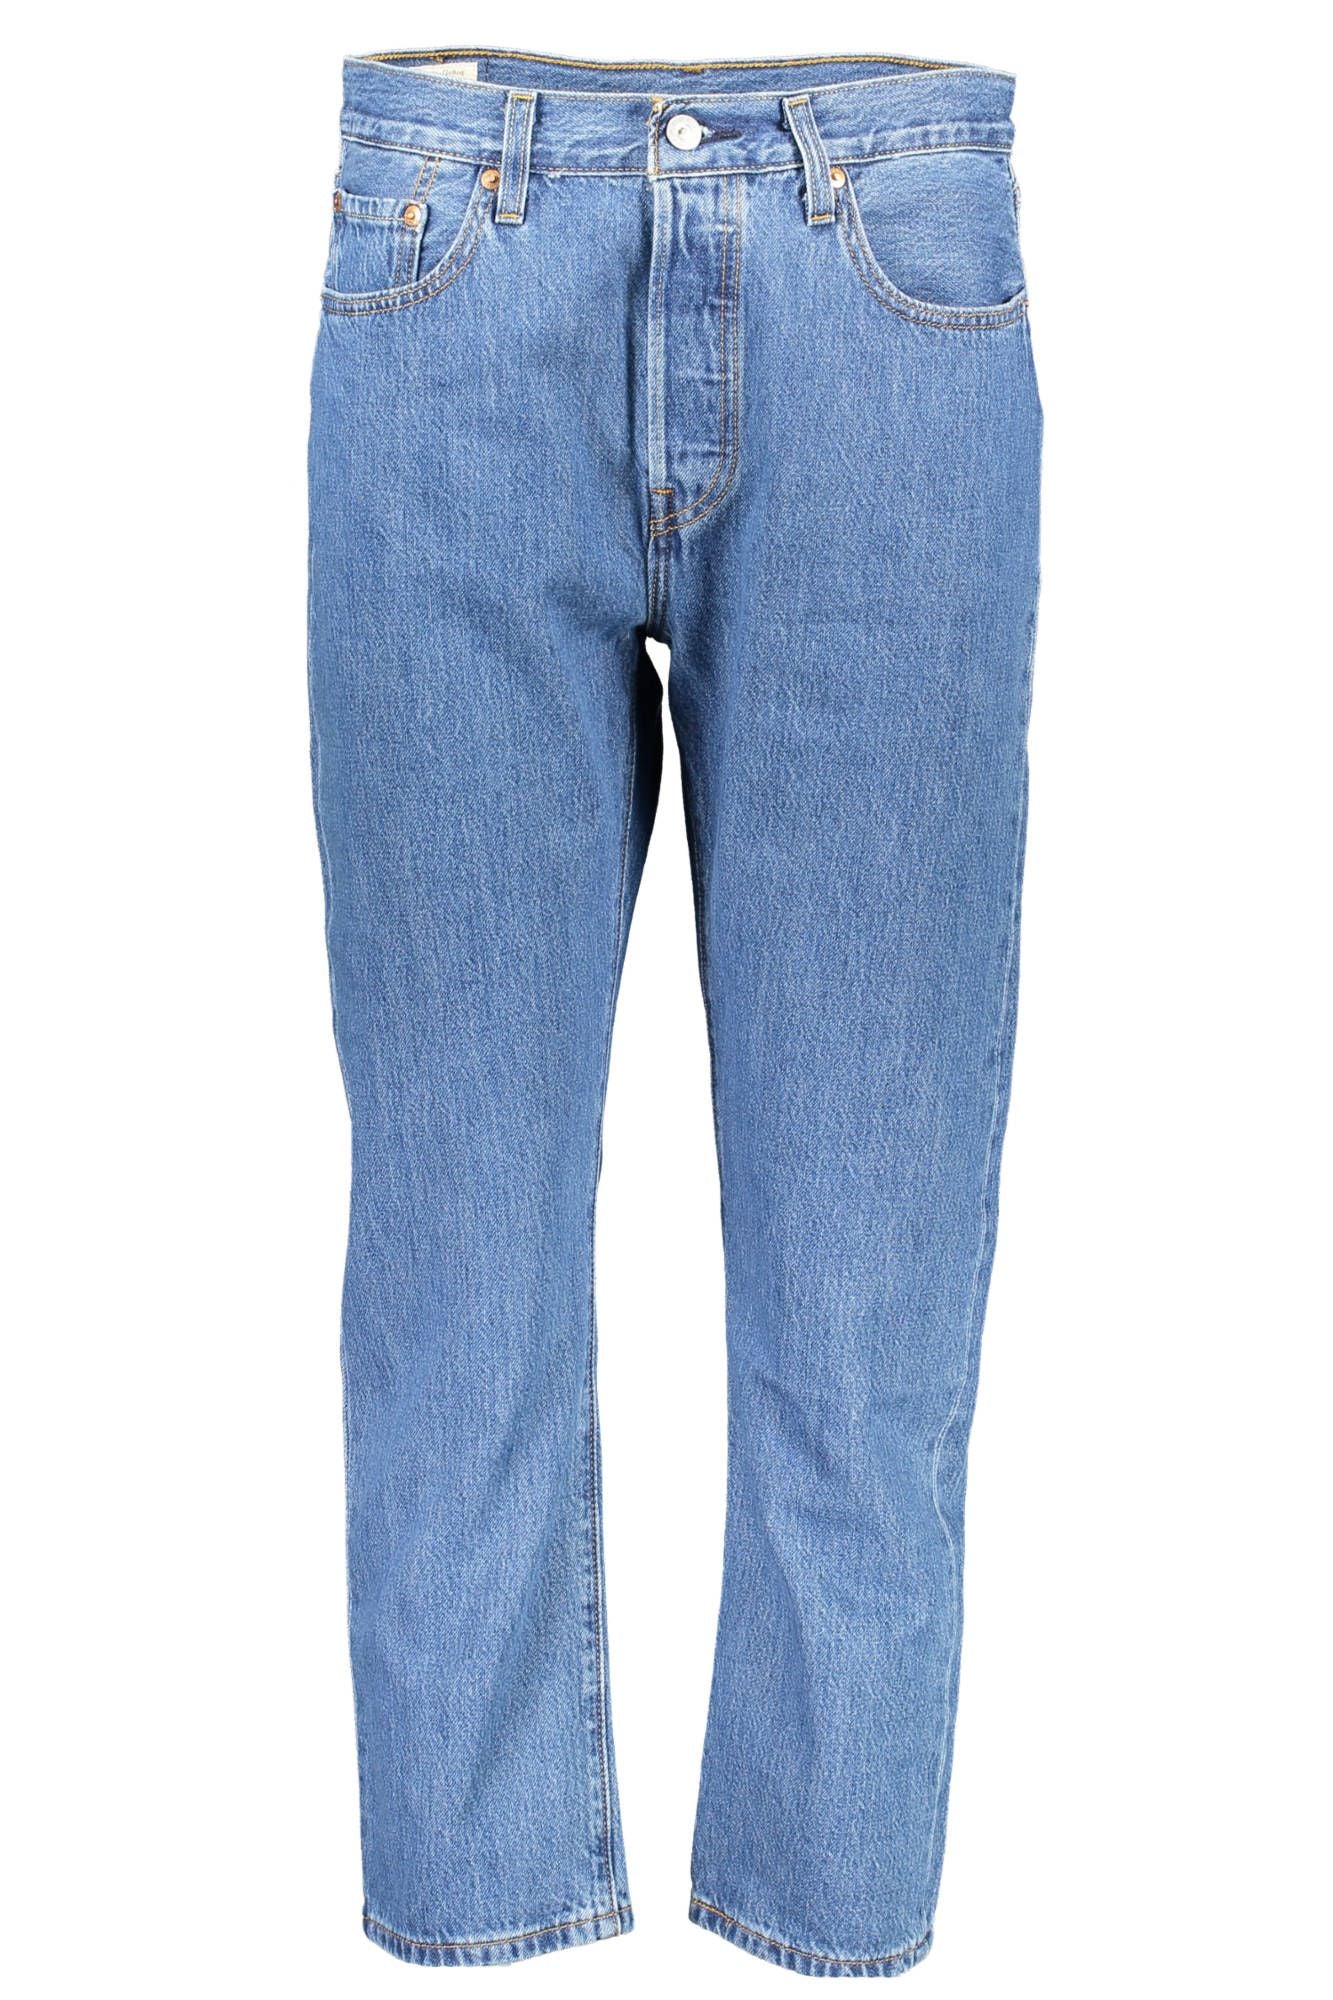 Levi's Chic Blue Cotton 5-Pocket Jeans for Women